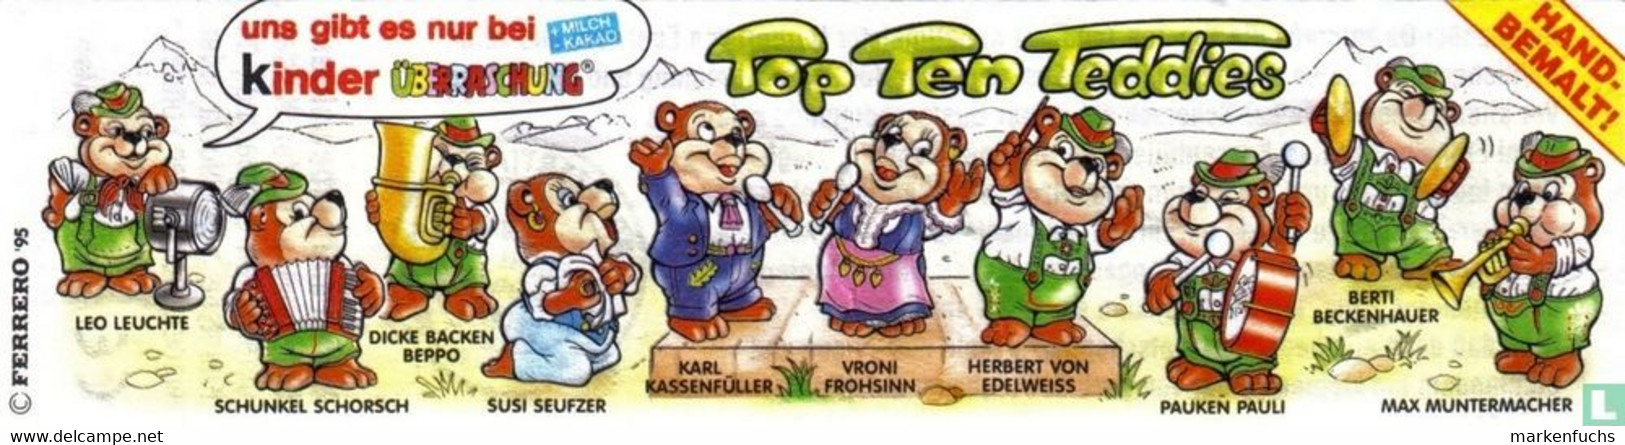 Top Ten Teddies / Musiker 1995 / Berti Beckenhauer + BPZ - Ü-Ei